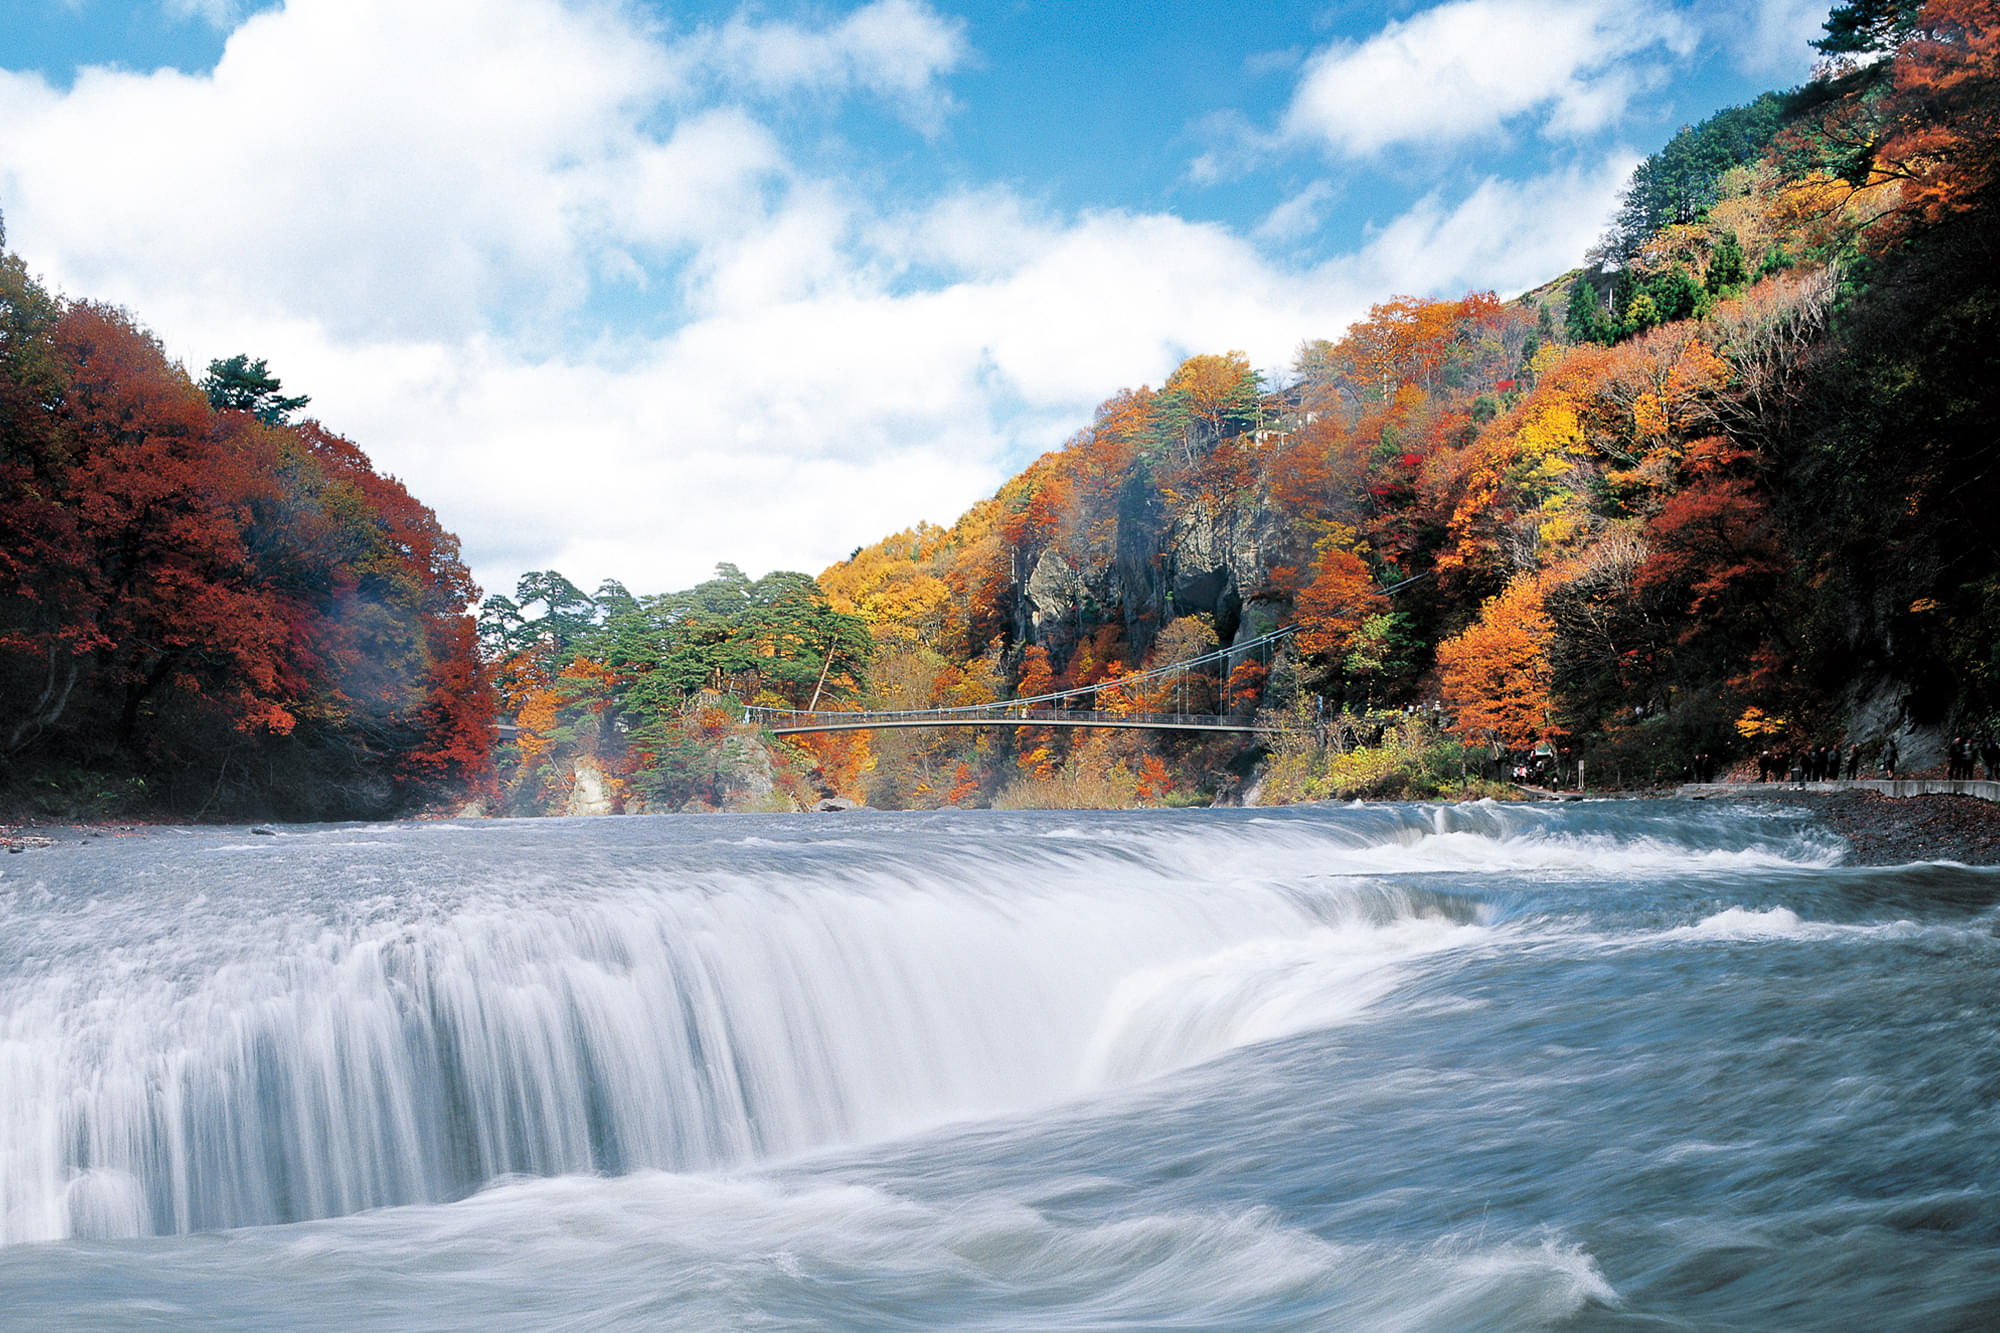 Admire the scenic beauty of Fukiware-no-taki Waterfalls